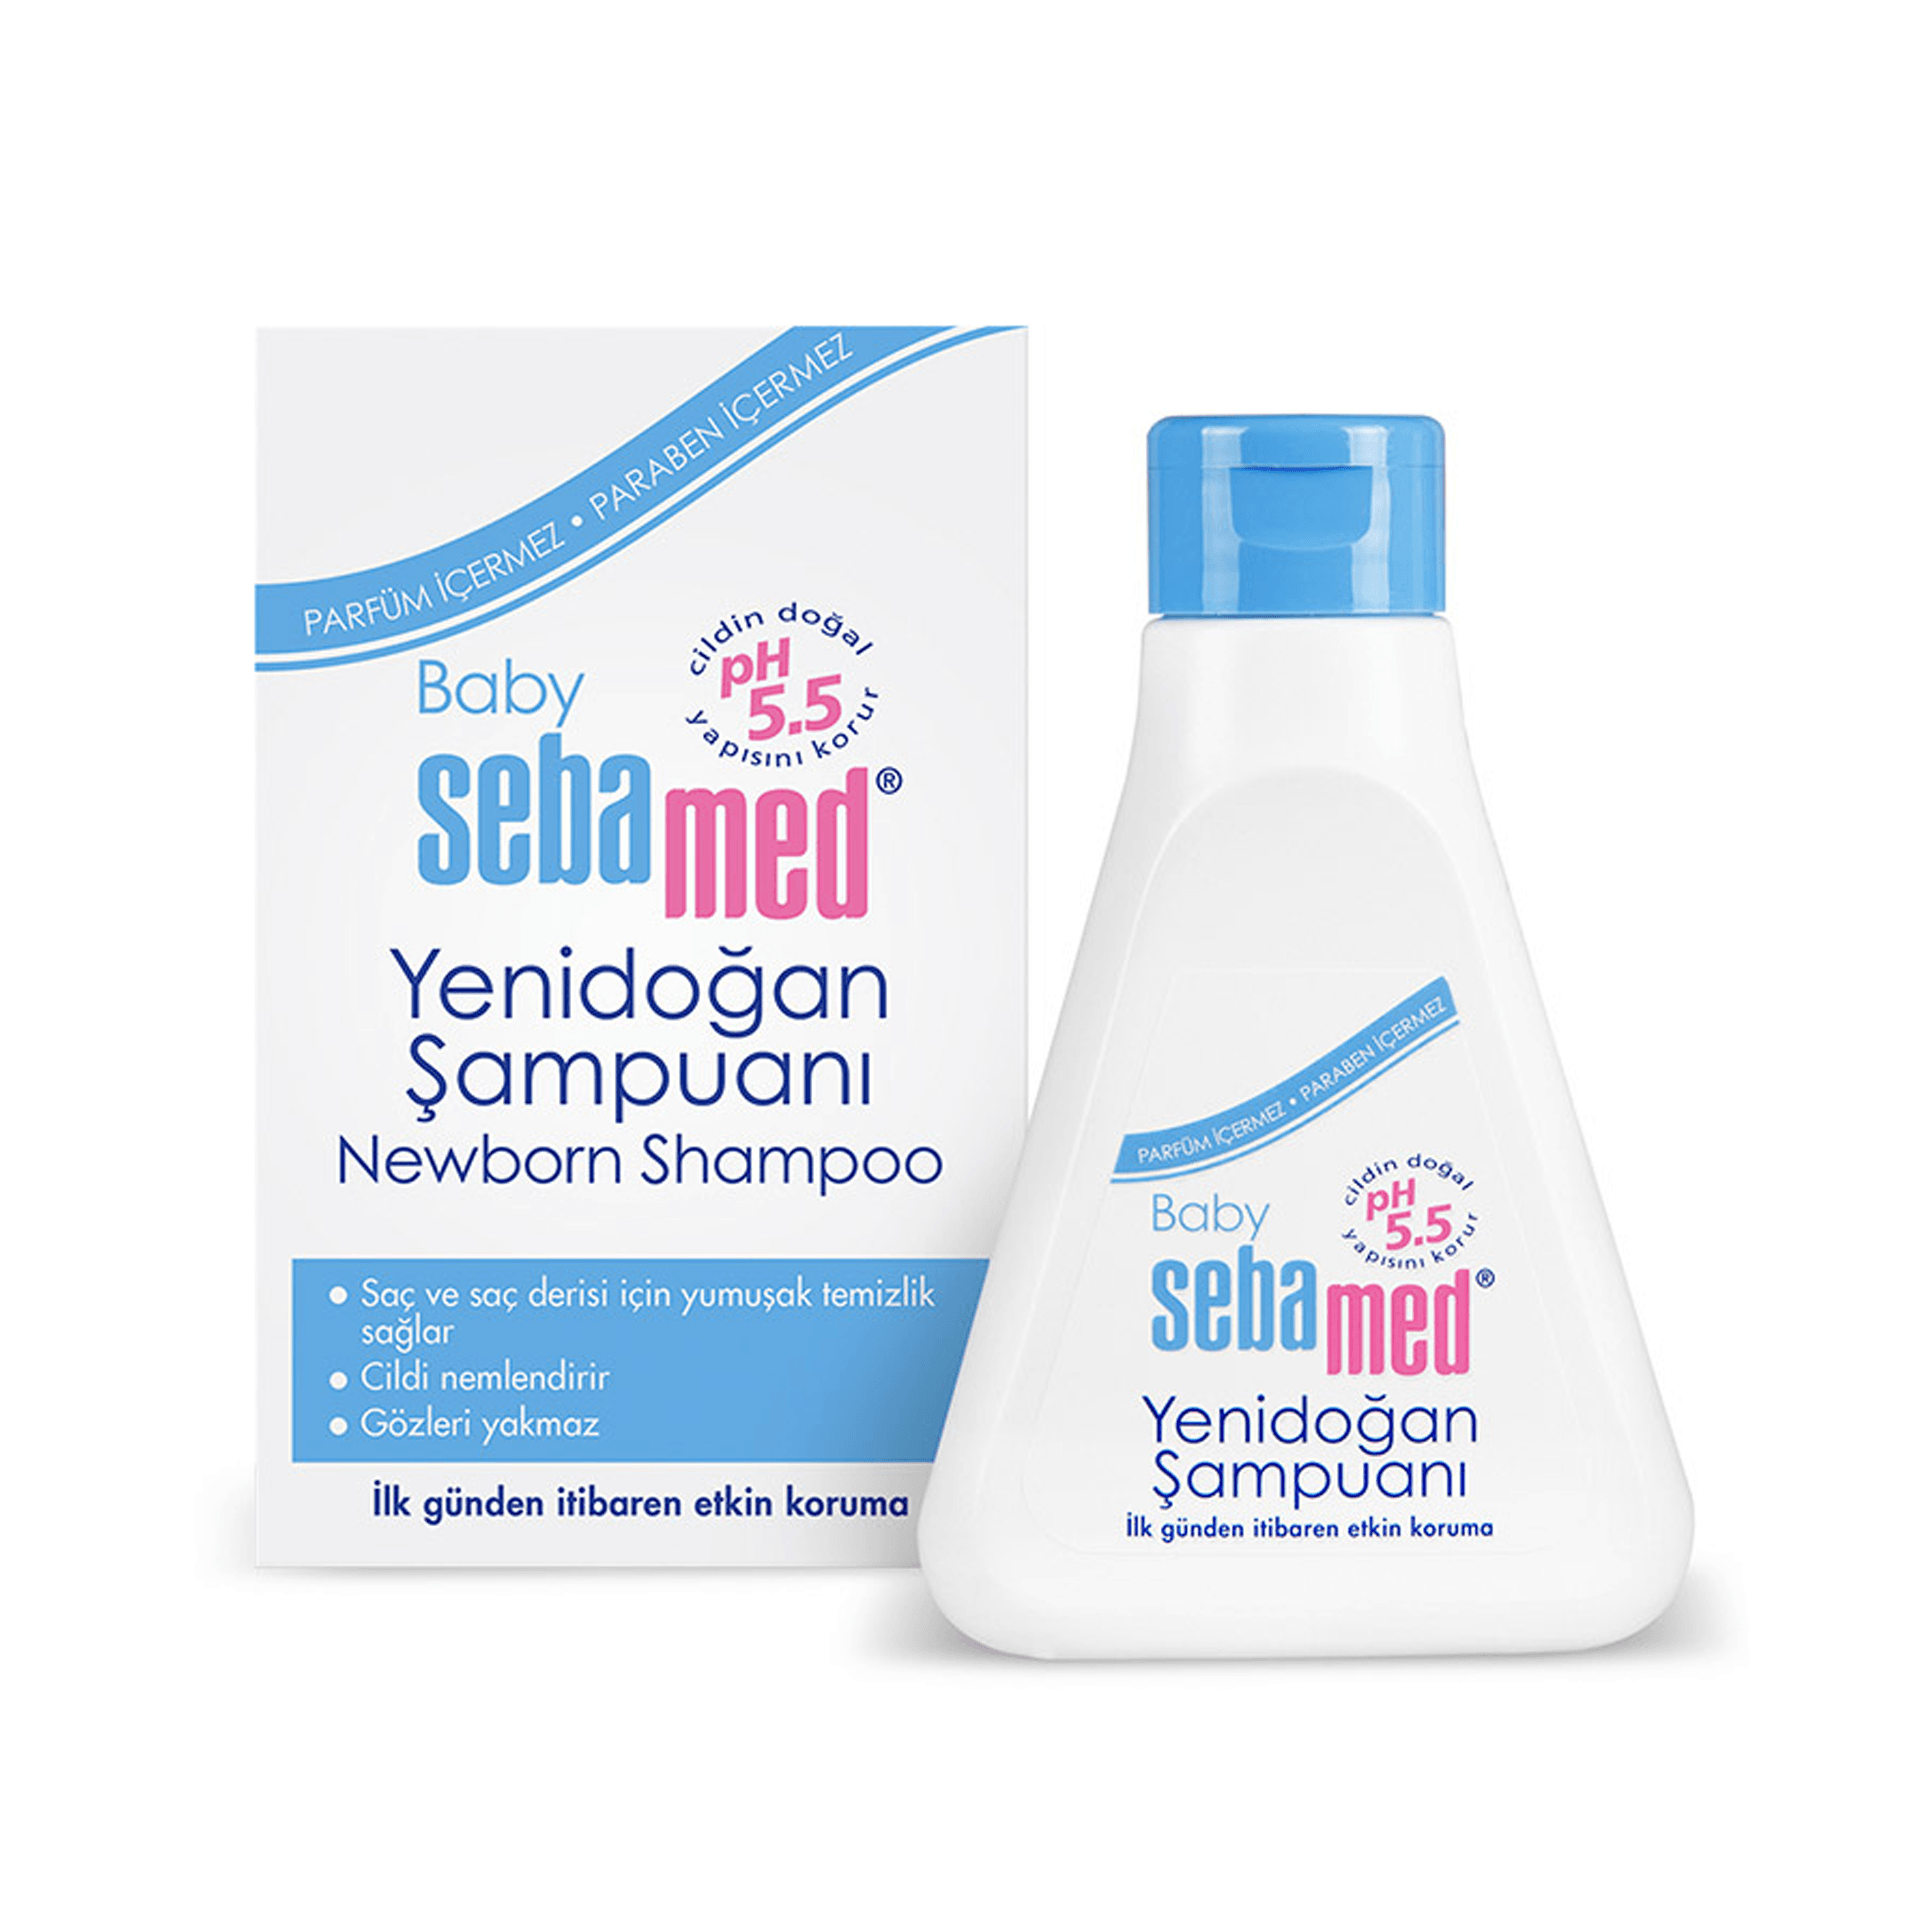 Sebamed Baby Yenidoğan Şampuanı 250mL